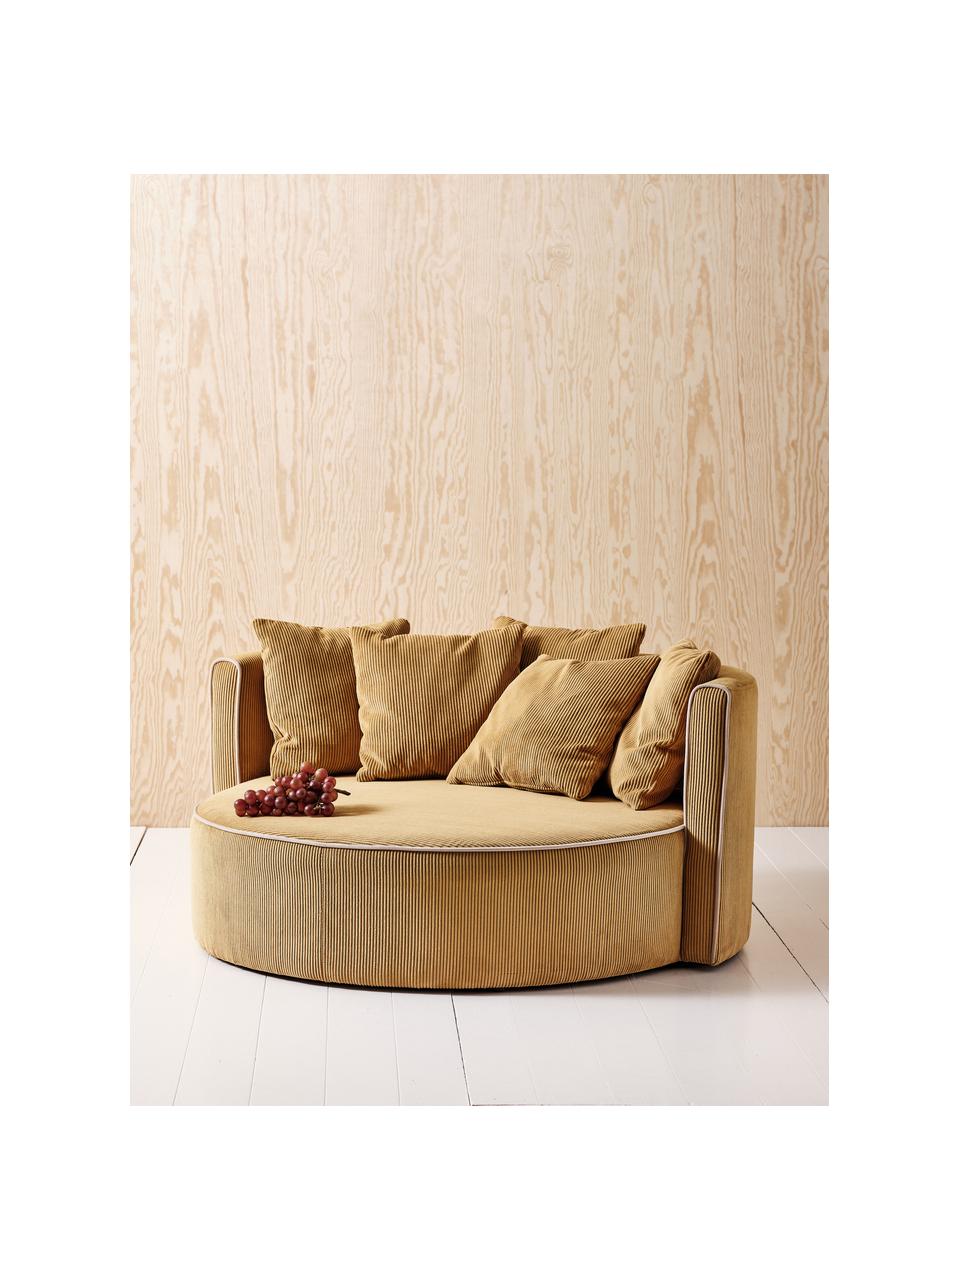 Sofa dla dzieci Wyoming Mini, Tapicerka: sztruks (88% poliester, 1, Stelaż: drewno sosnowe, sklejka, , Ochrowy sztruks, S 114 x G 106 cm